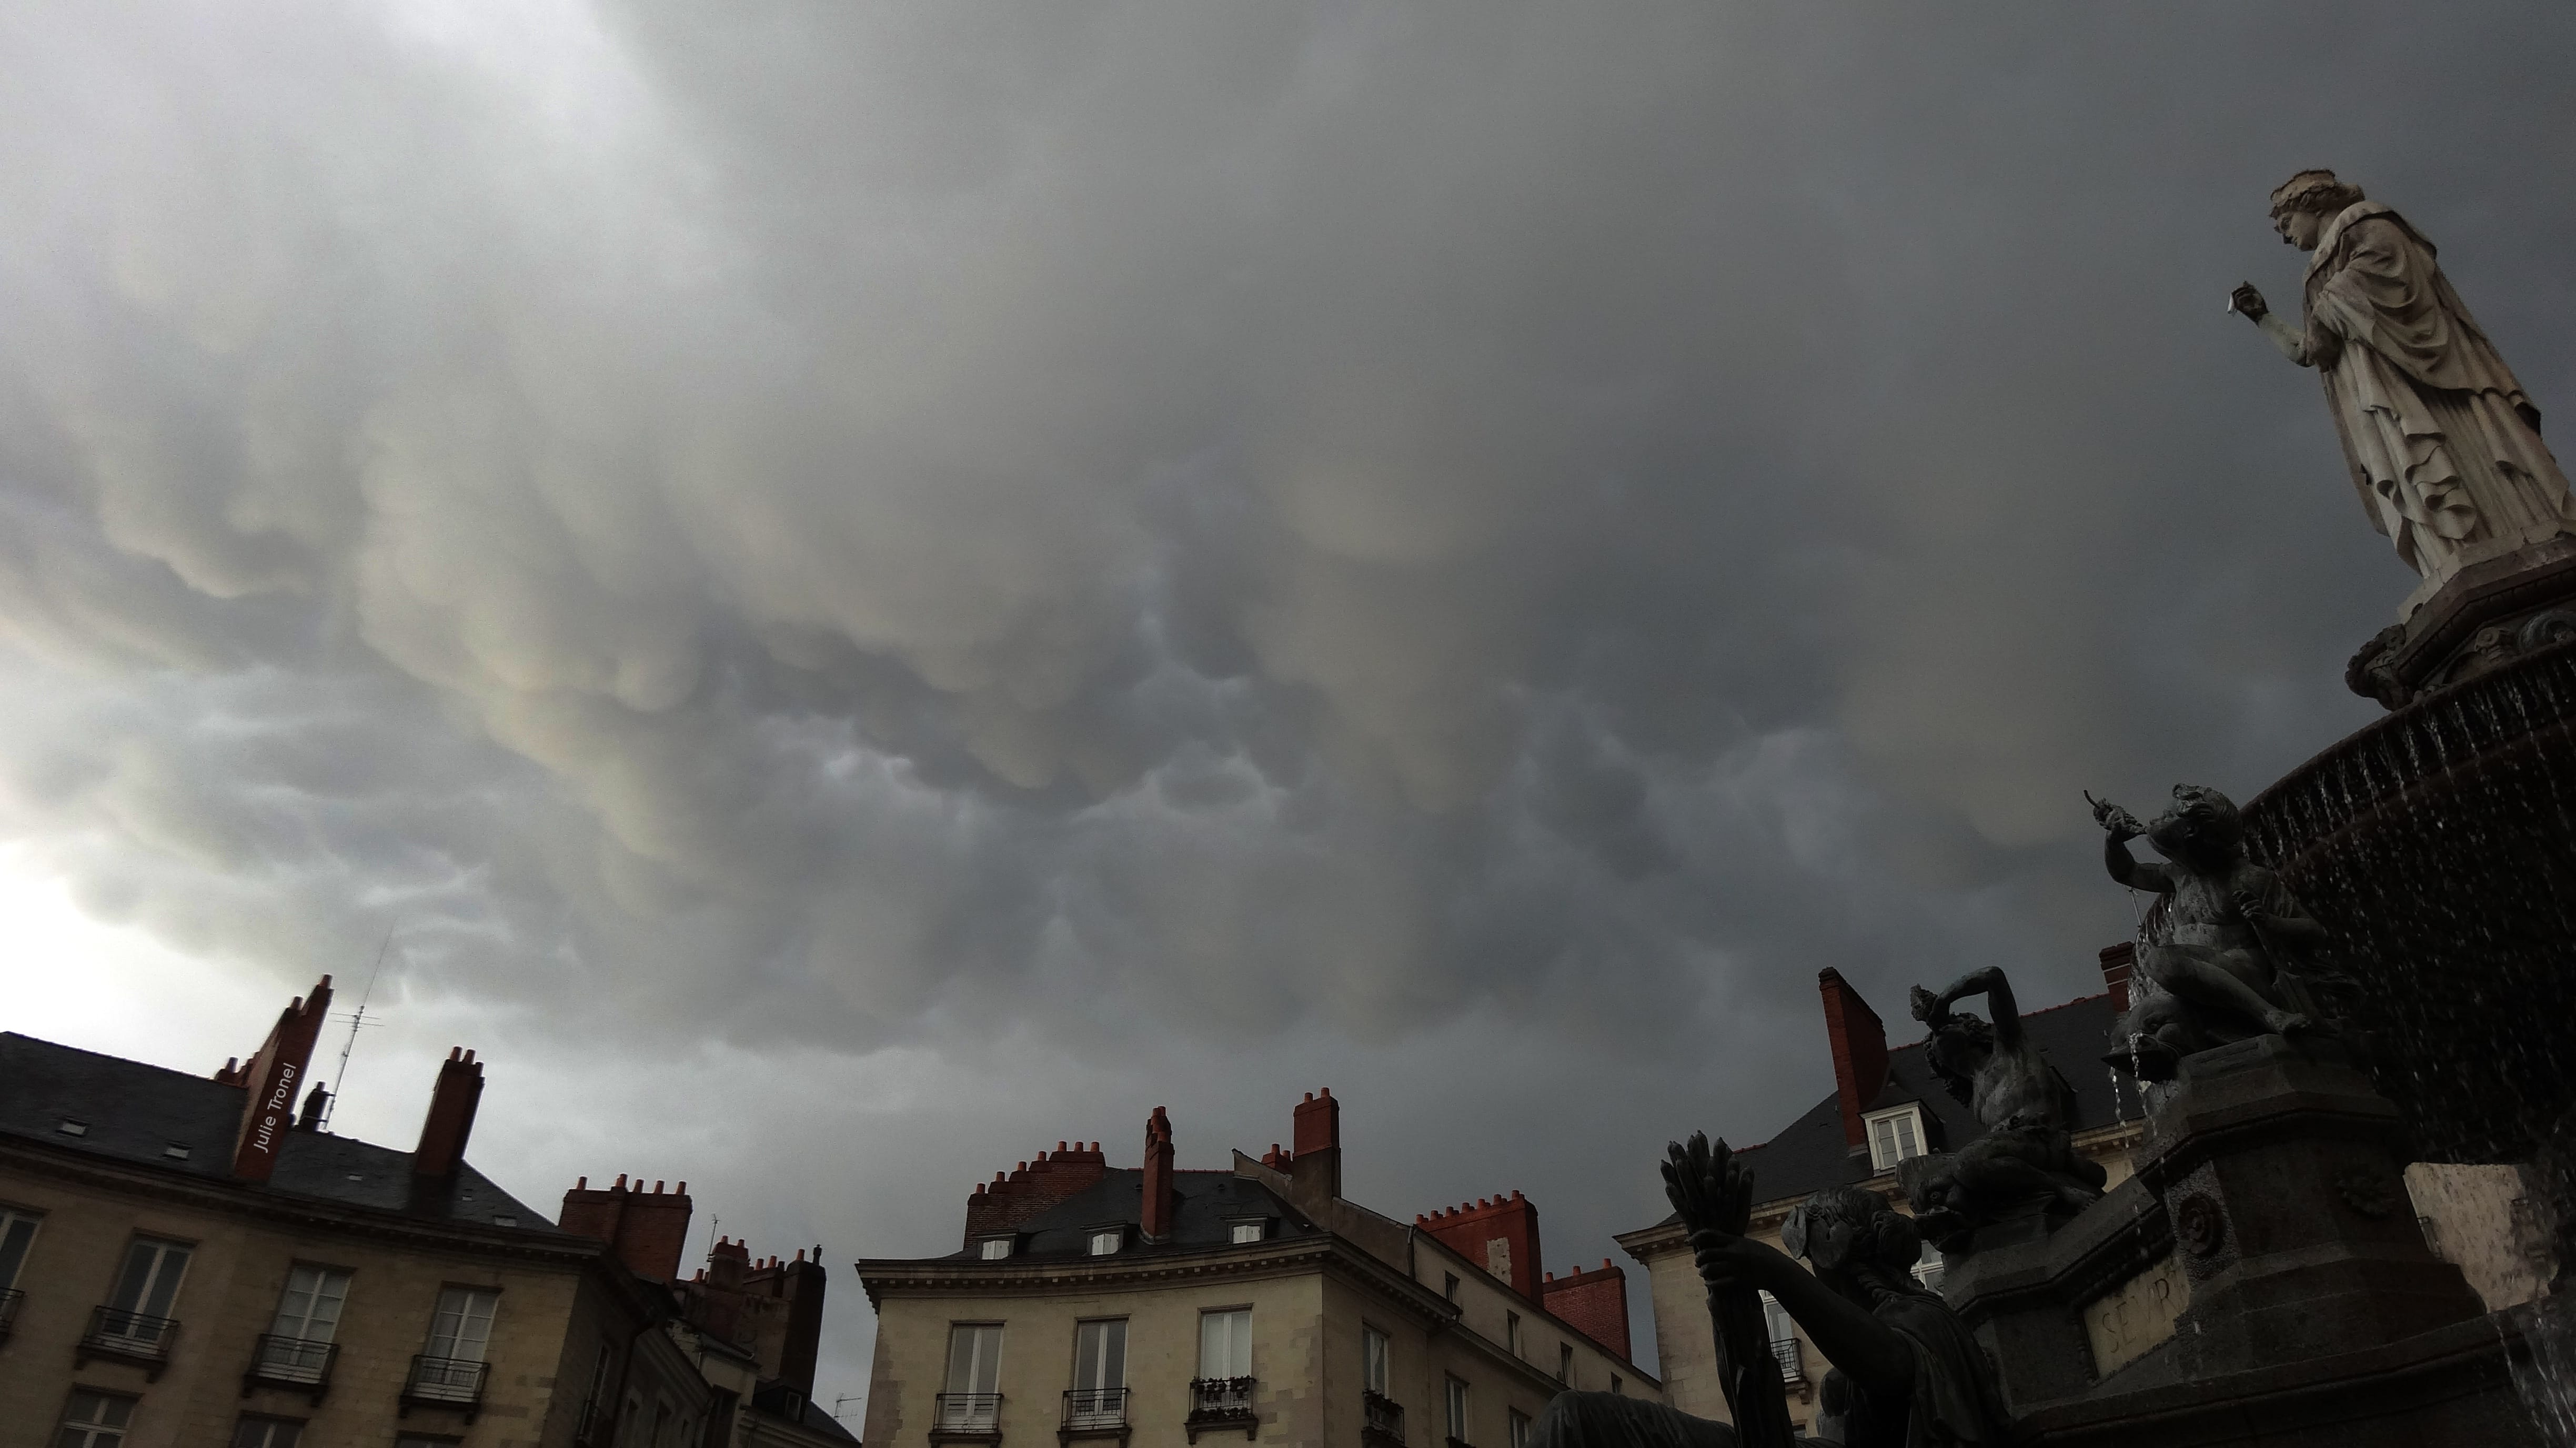 Mammatus en fin d'après-midi vus depuis la place Royale de Nantes. - 19/09/2020 00:00 - Julie Tronel